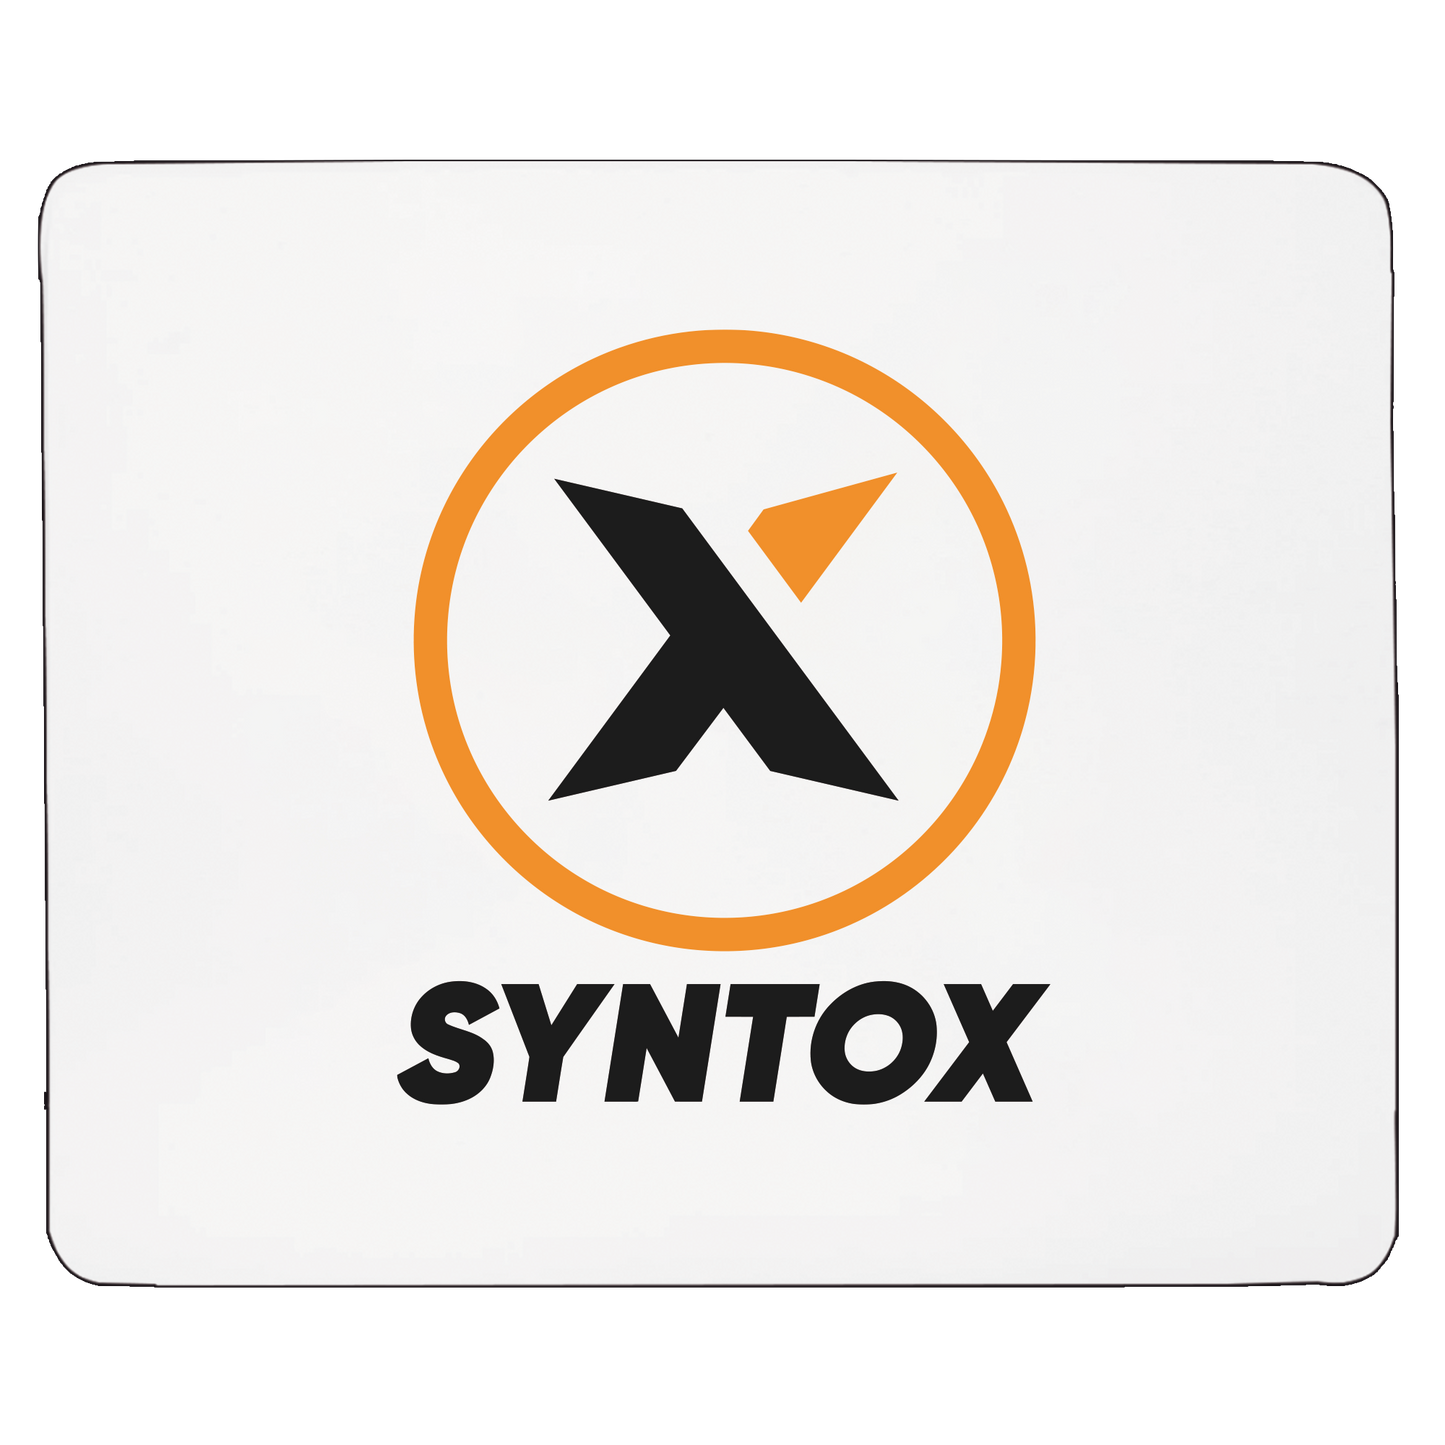 Syntox - Musemåtte med klub logo